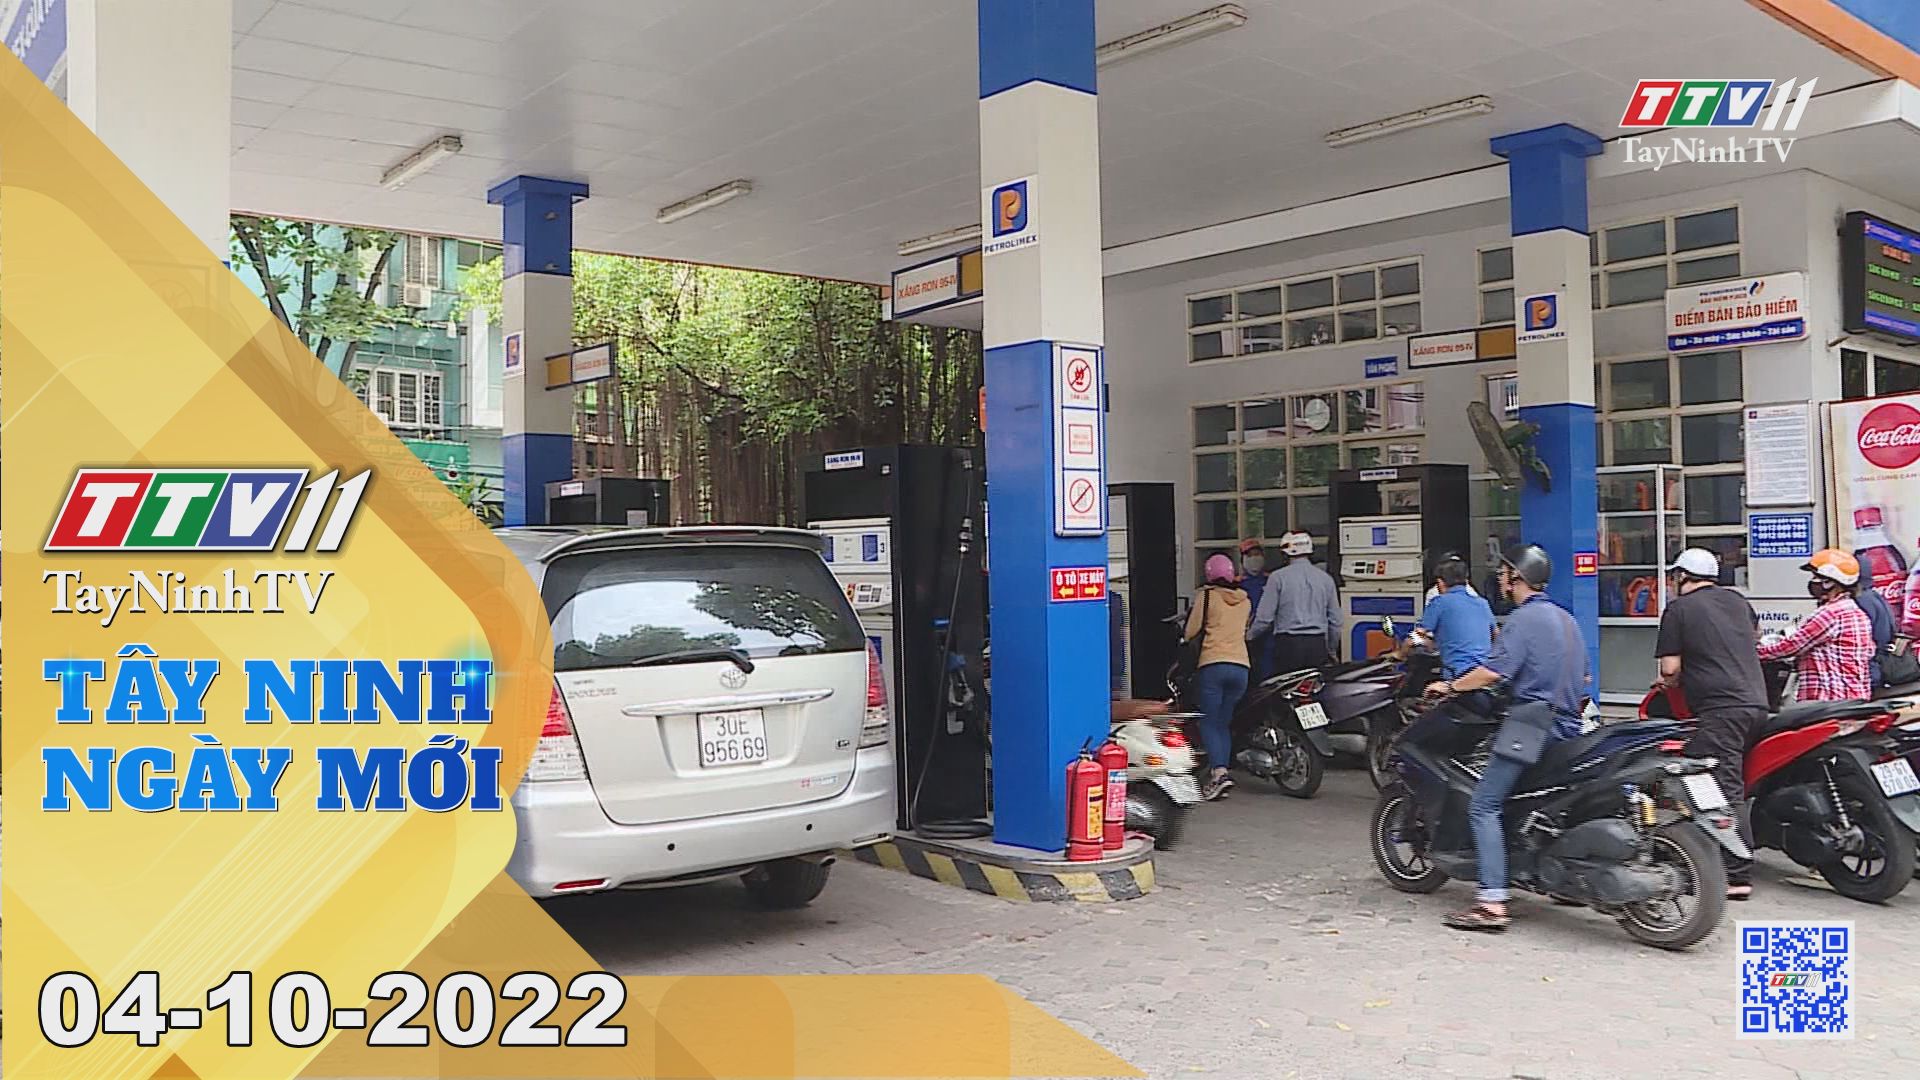 Tây Ninh ngày mới 04-10-2022 | Tin tức hôm nay | TayNinhTV